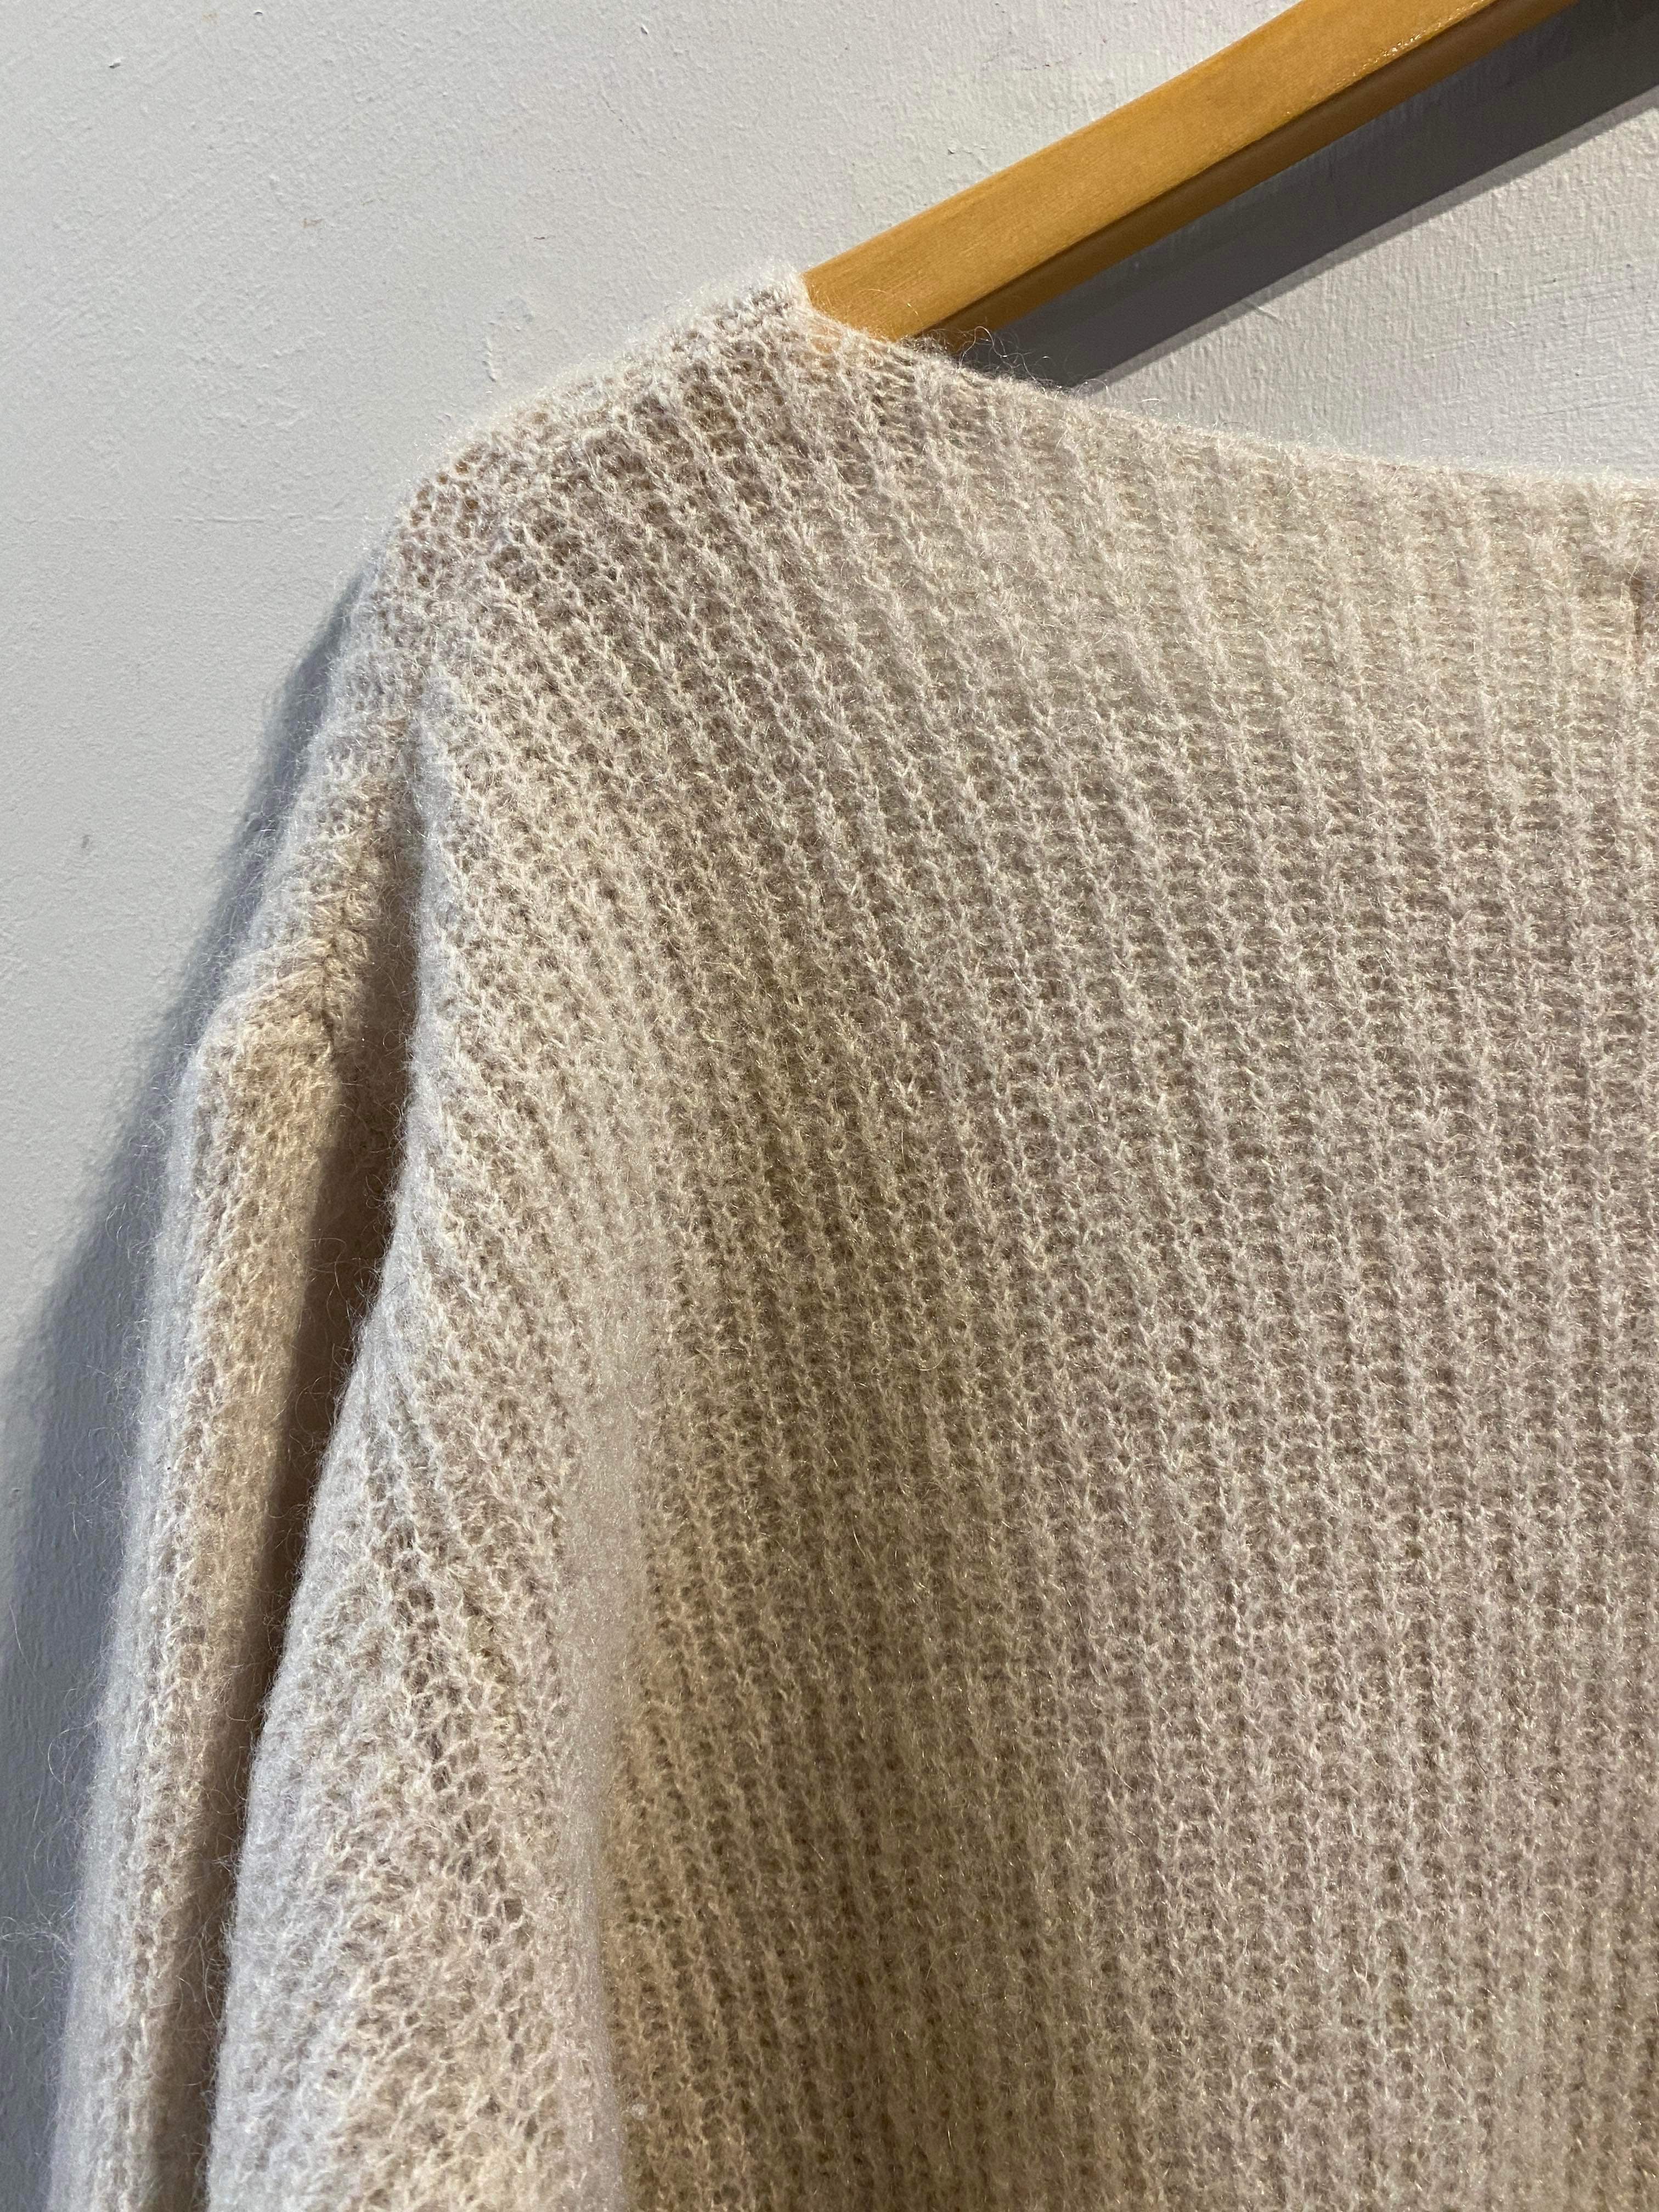 Alexander Laurent Paris - Sweater - Size: M